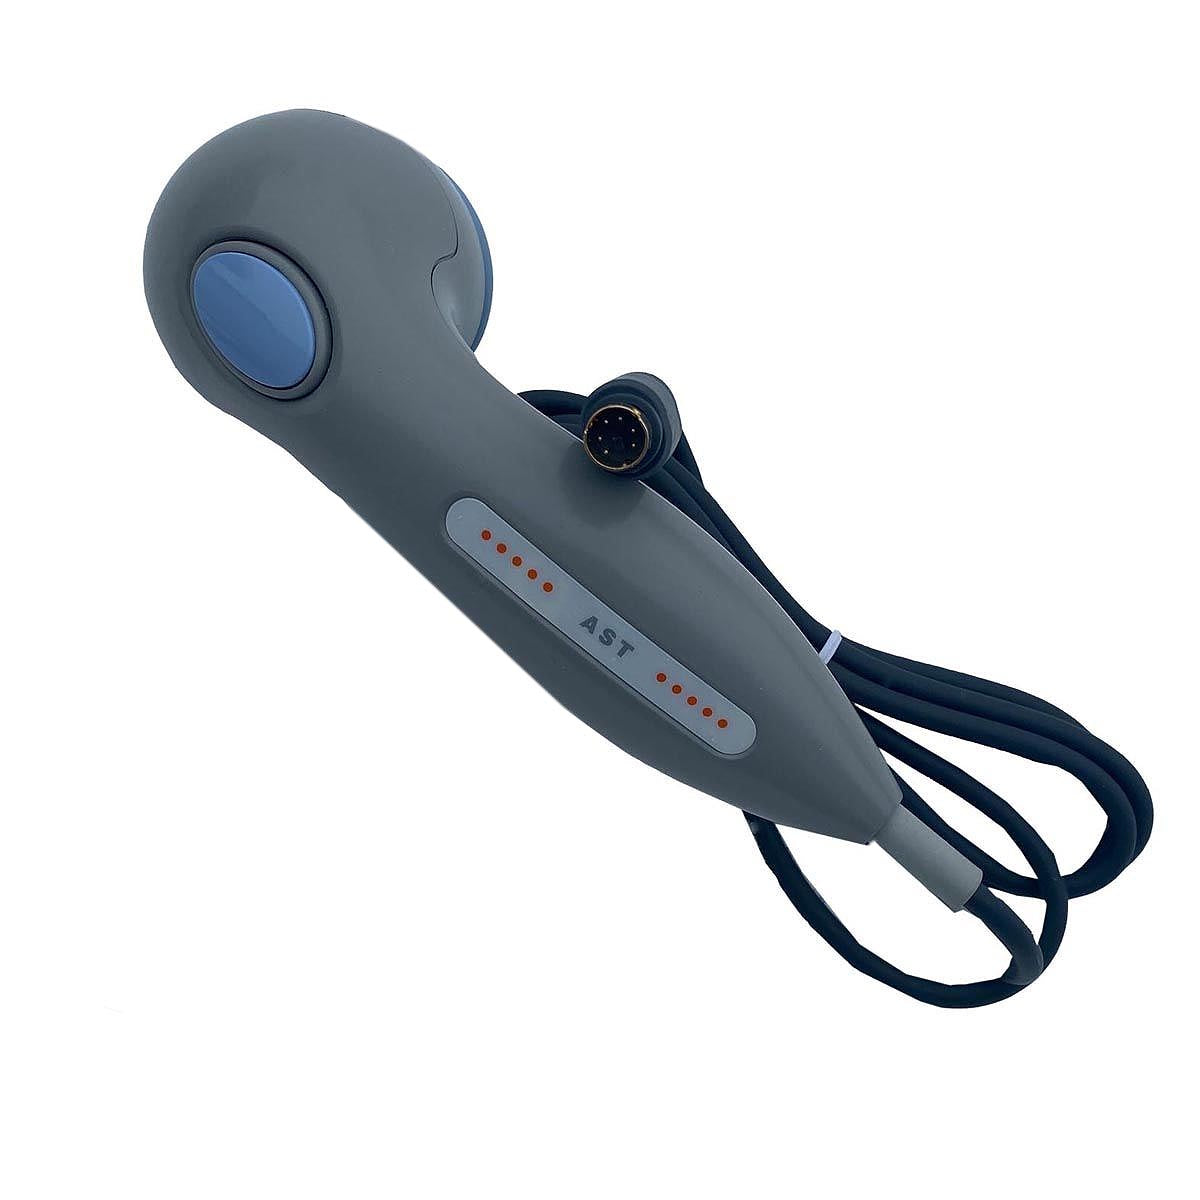 Bistos acustic fetal stimulator for bt-300 fetal monitor